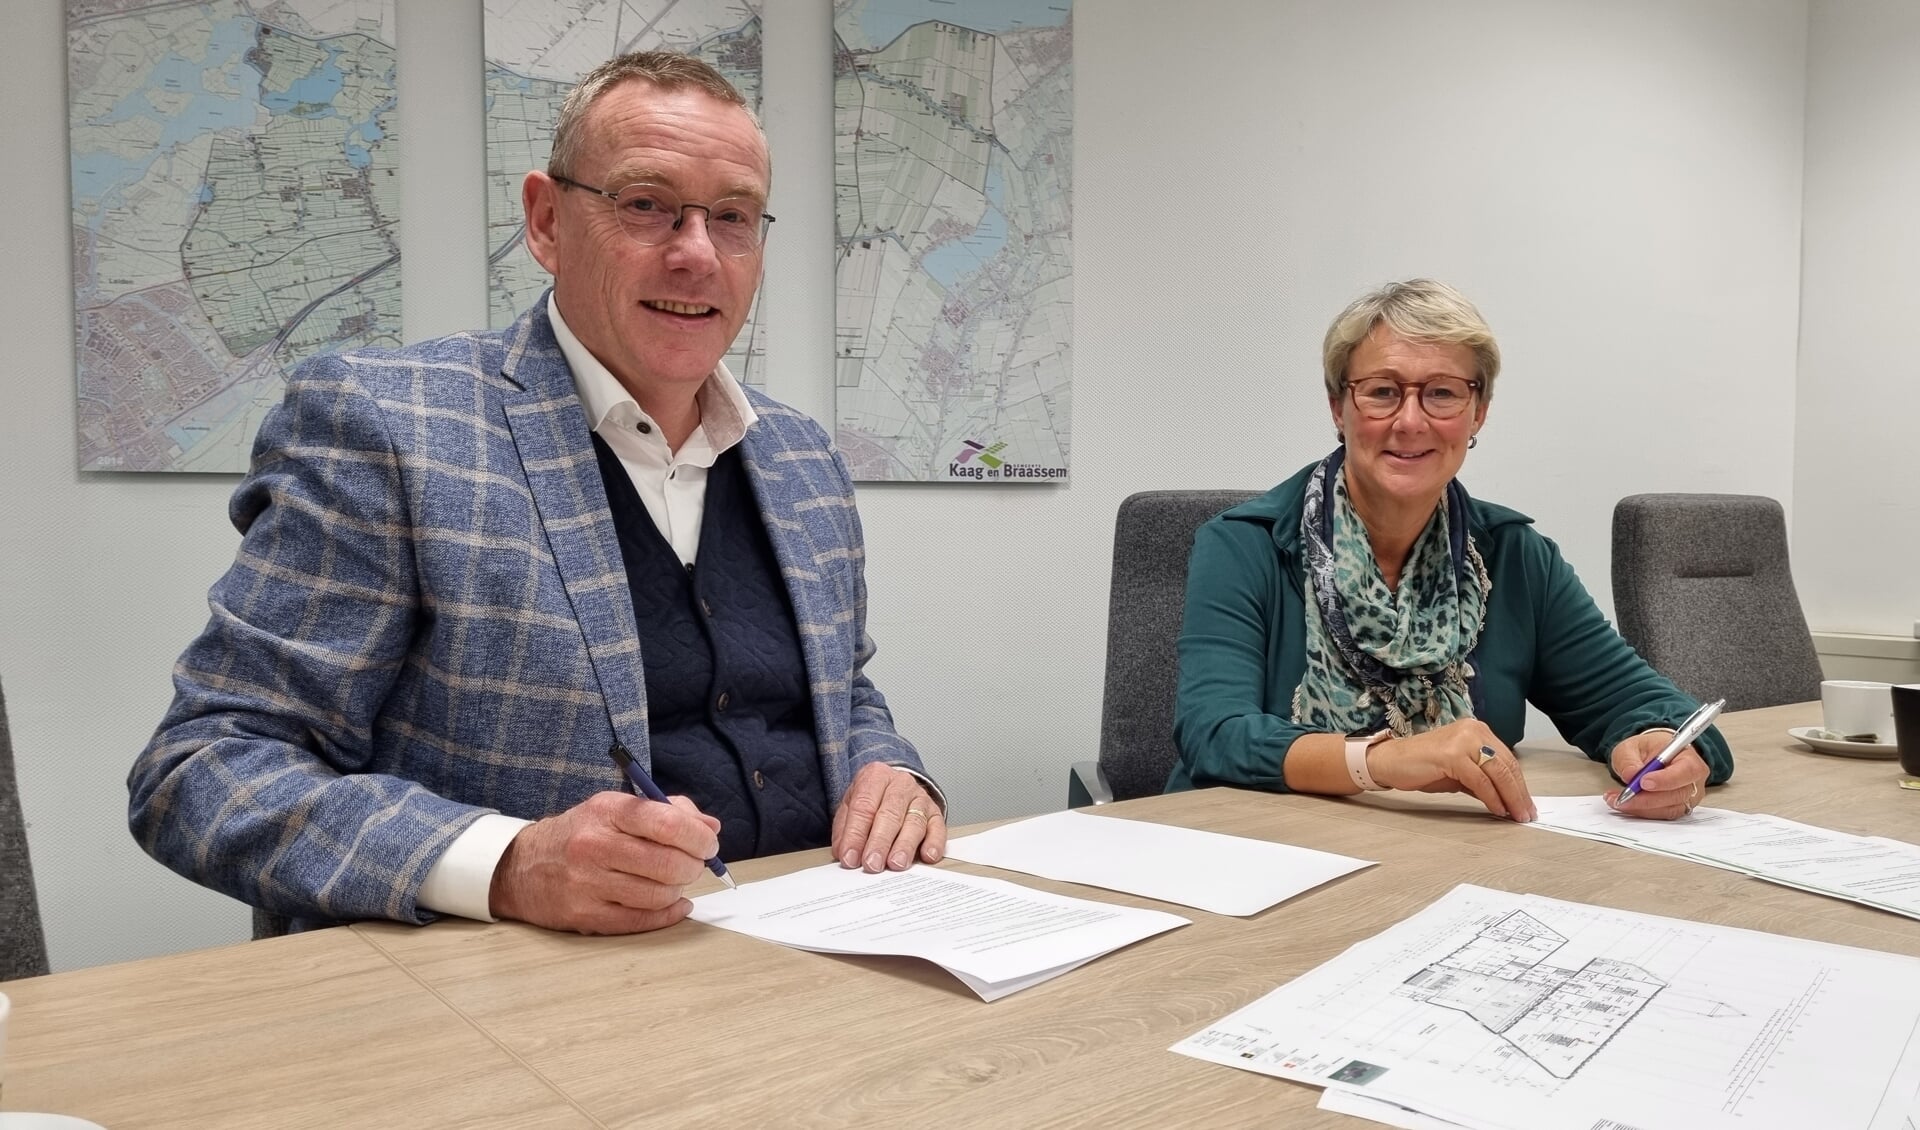 Op woensdag 3 november ondertekenden Marcel Meulen, directeur bestuurder bij Woondiensten Aarwoude en Yvonne Peters, wethouder van de gemeente Kaag en Braassem, de koopovereenkomst voor 7 sociale huurwoningen in Rijnsaterwoude 